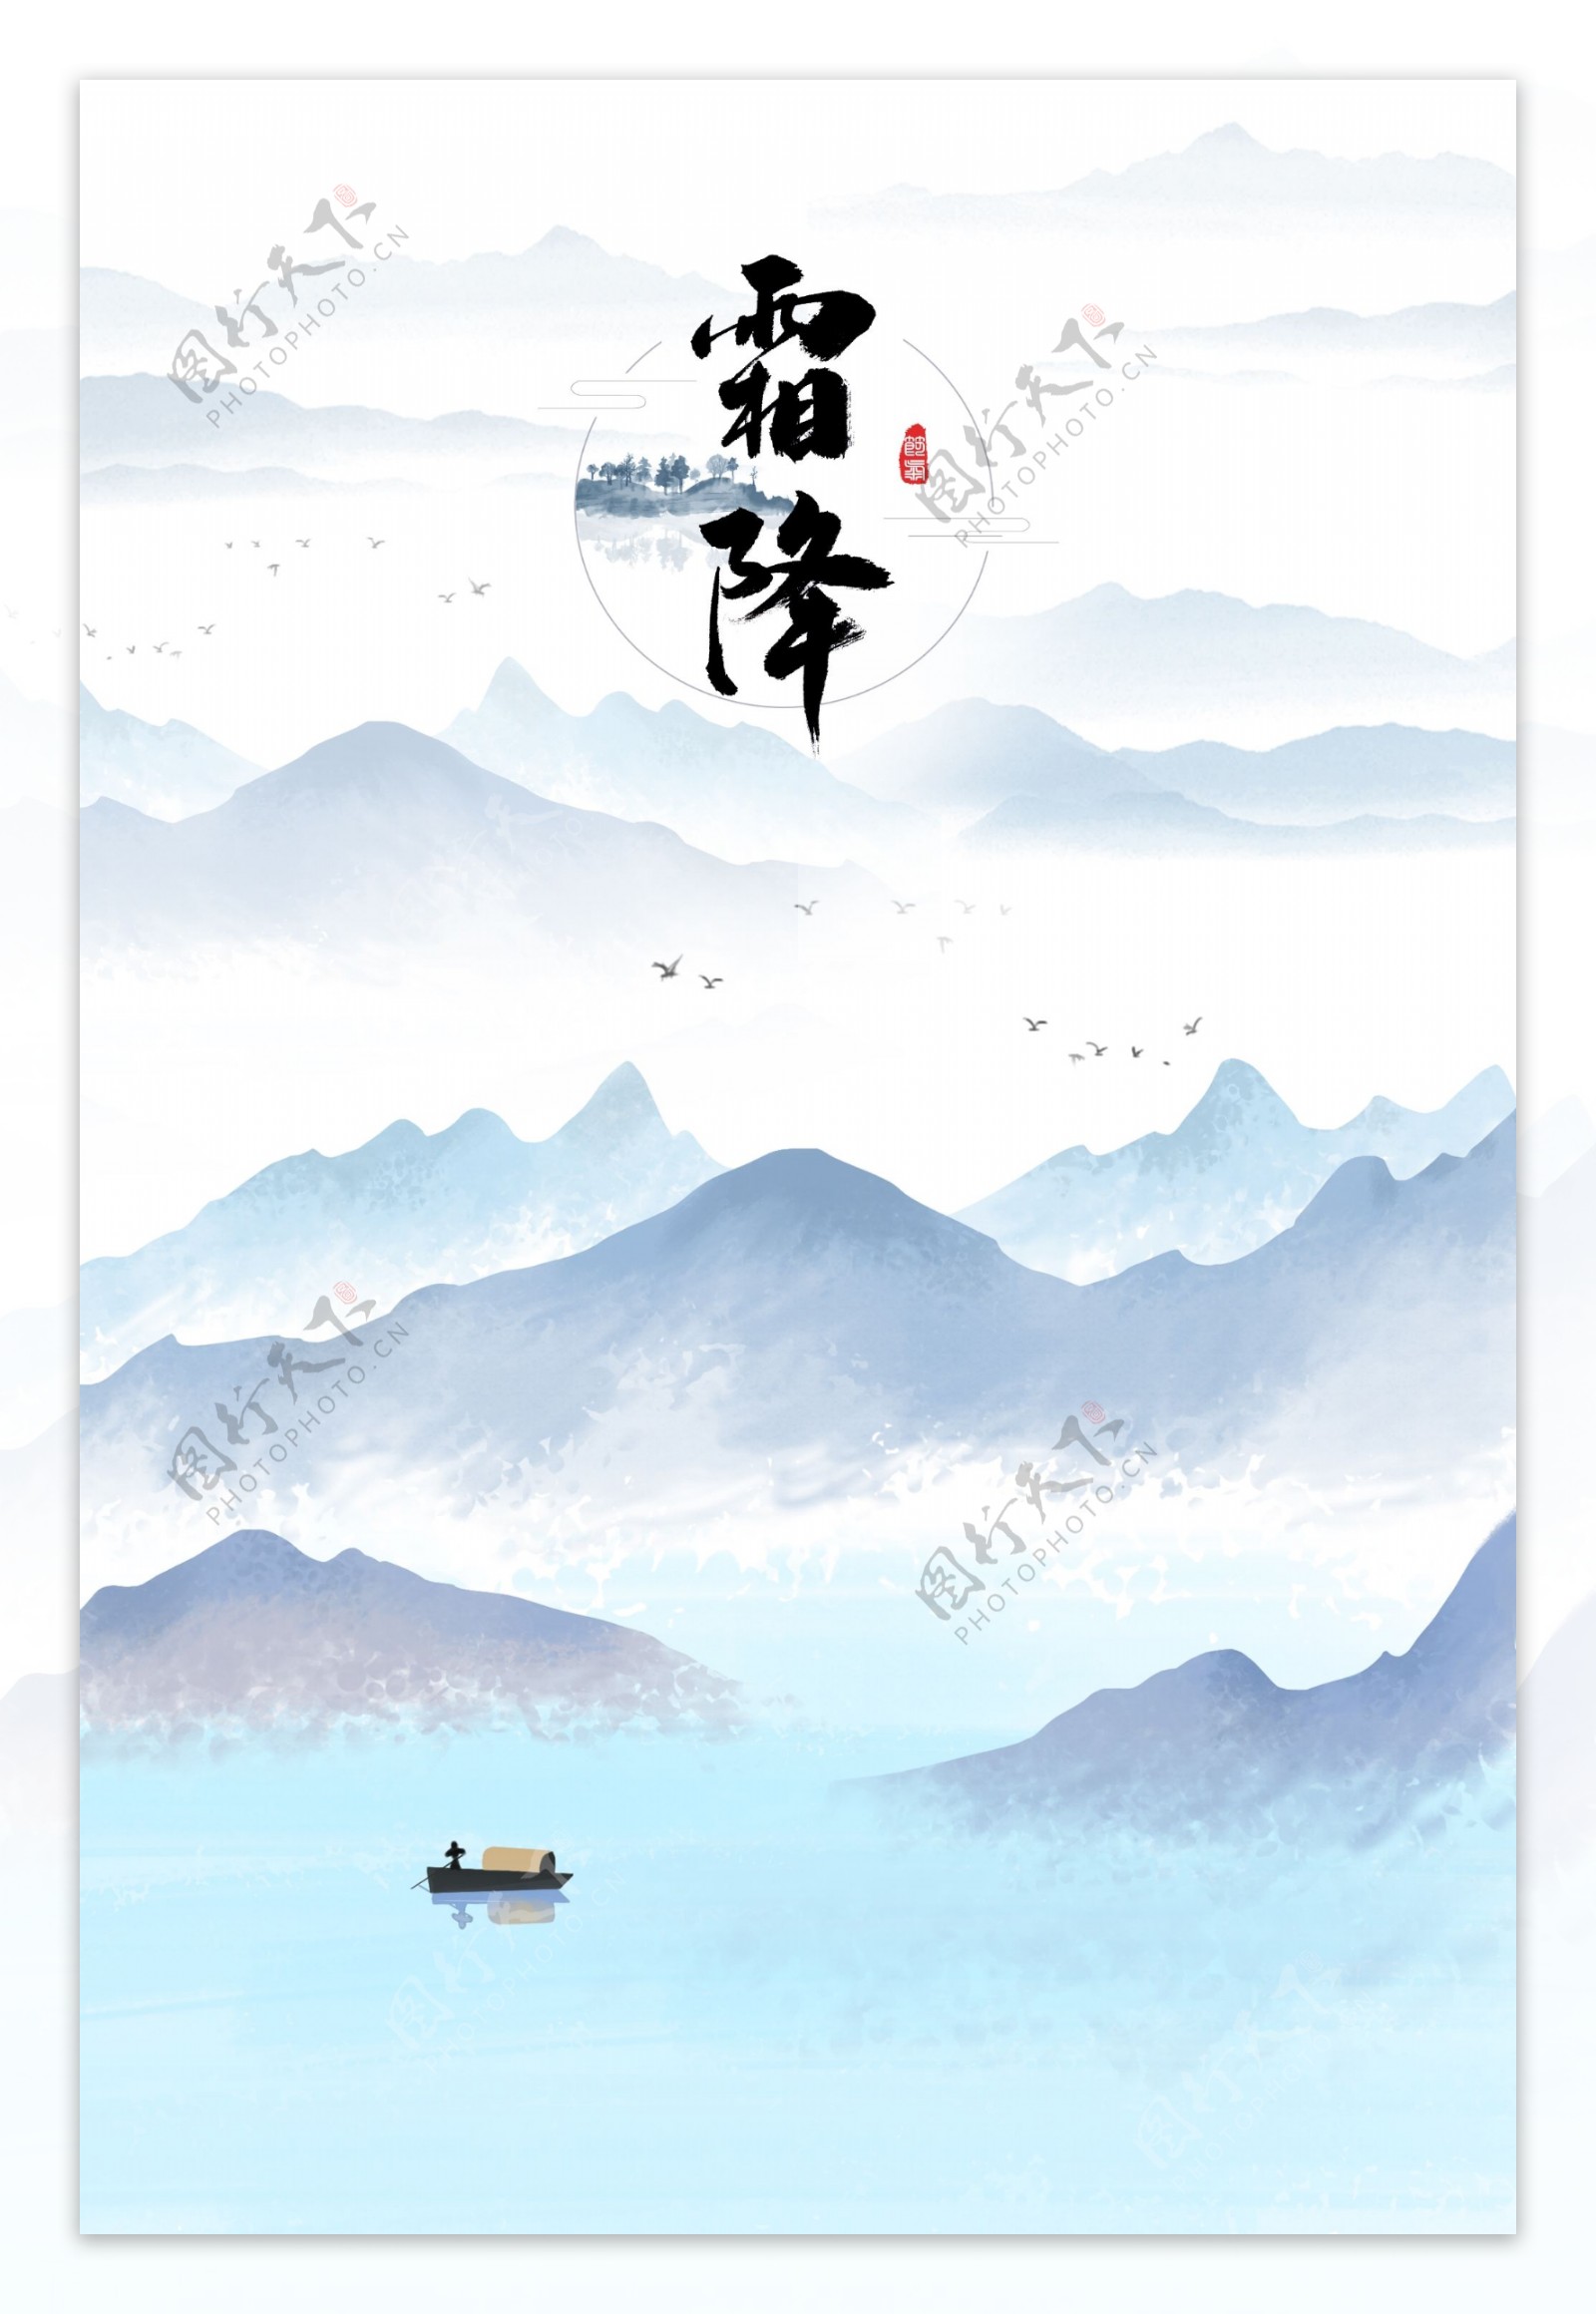 中国风山水霜降背景图片